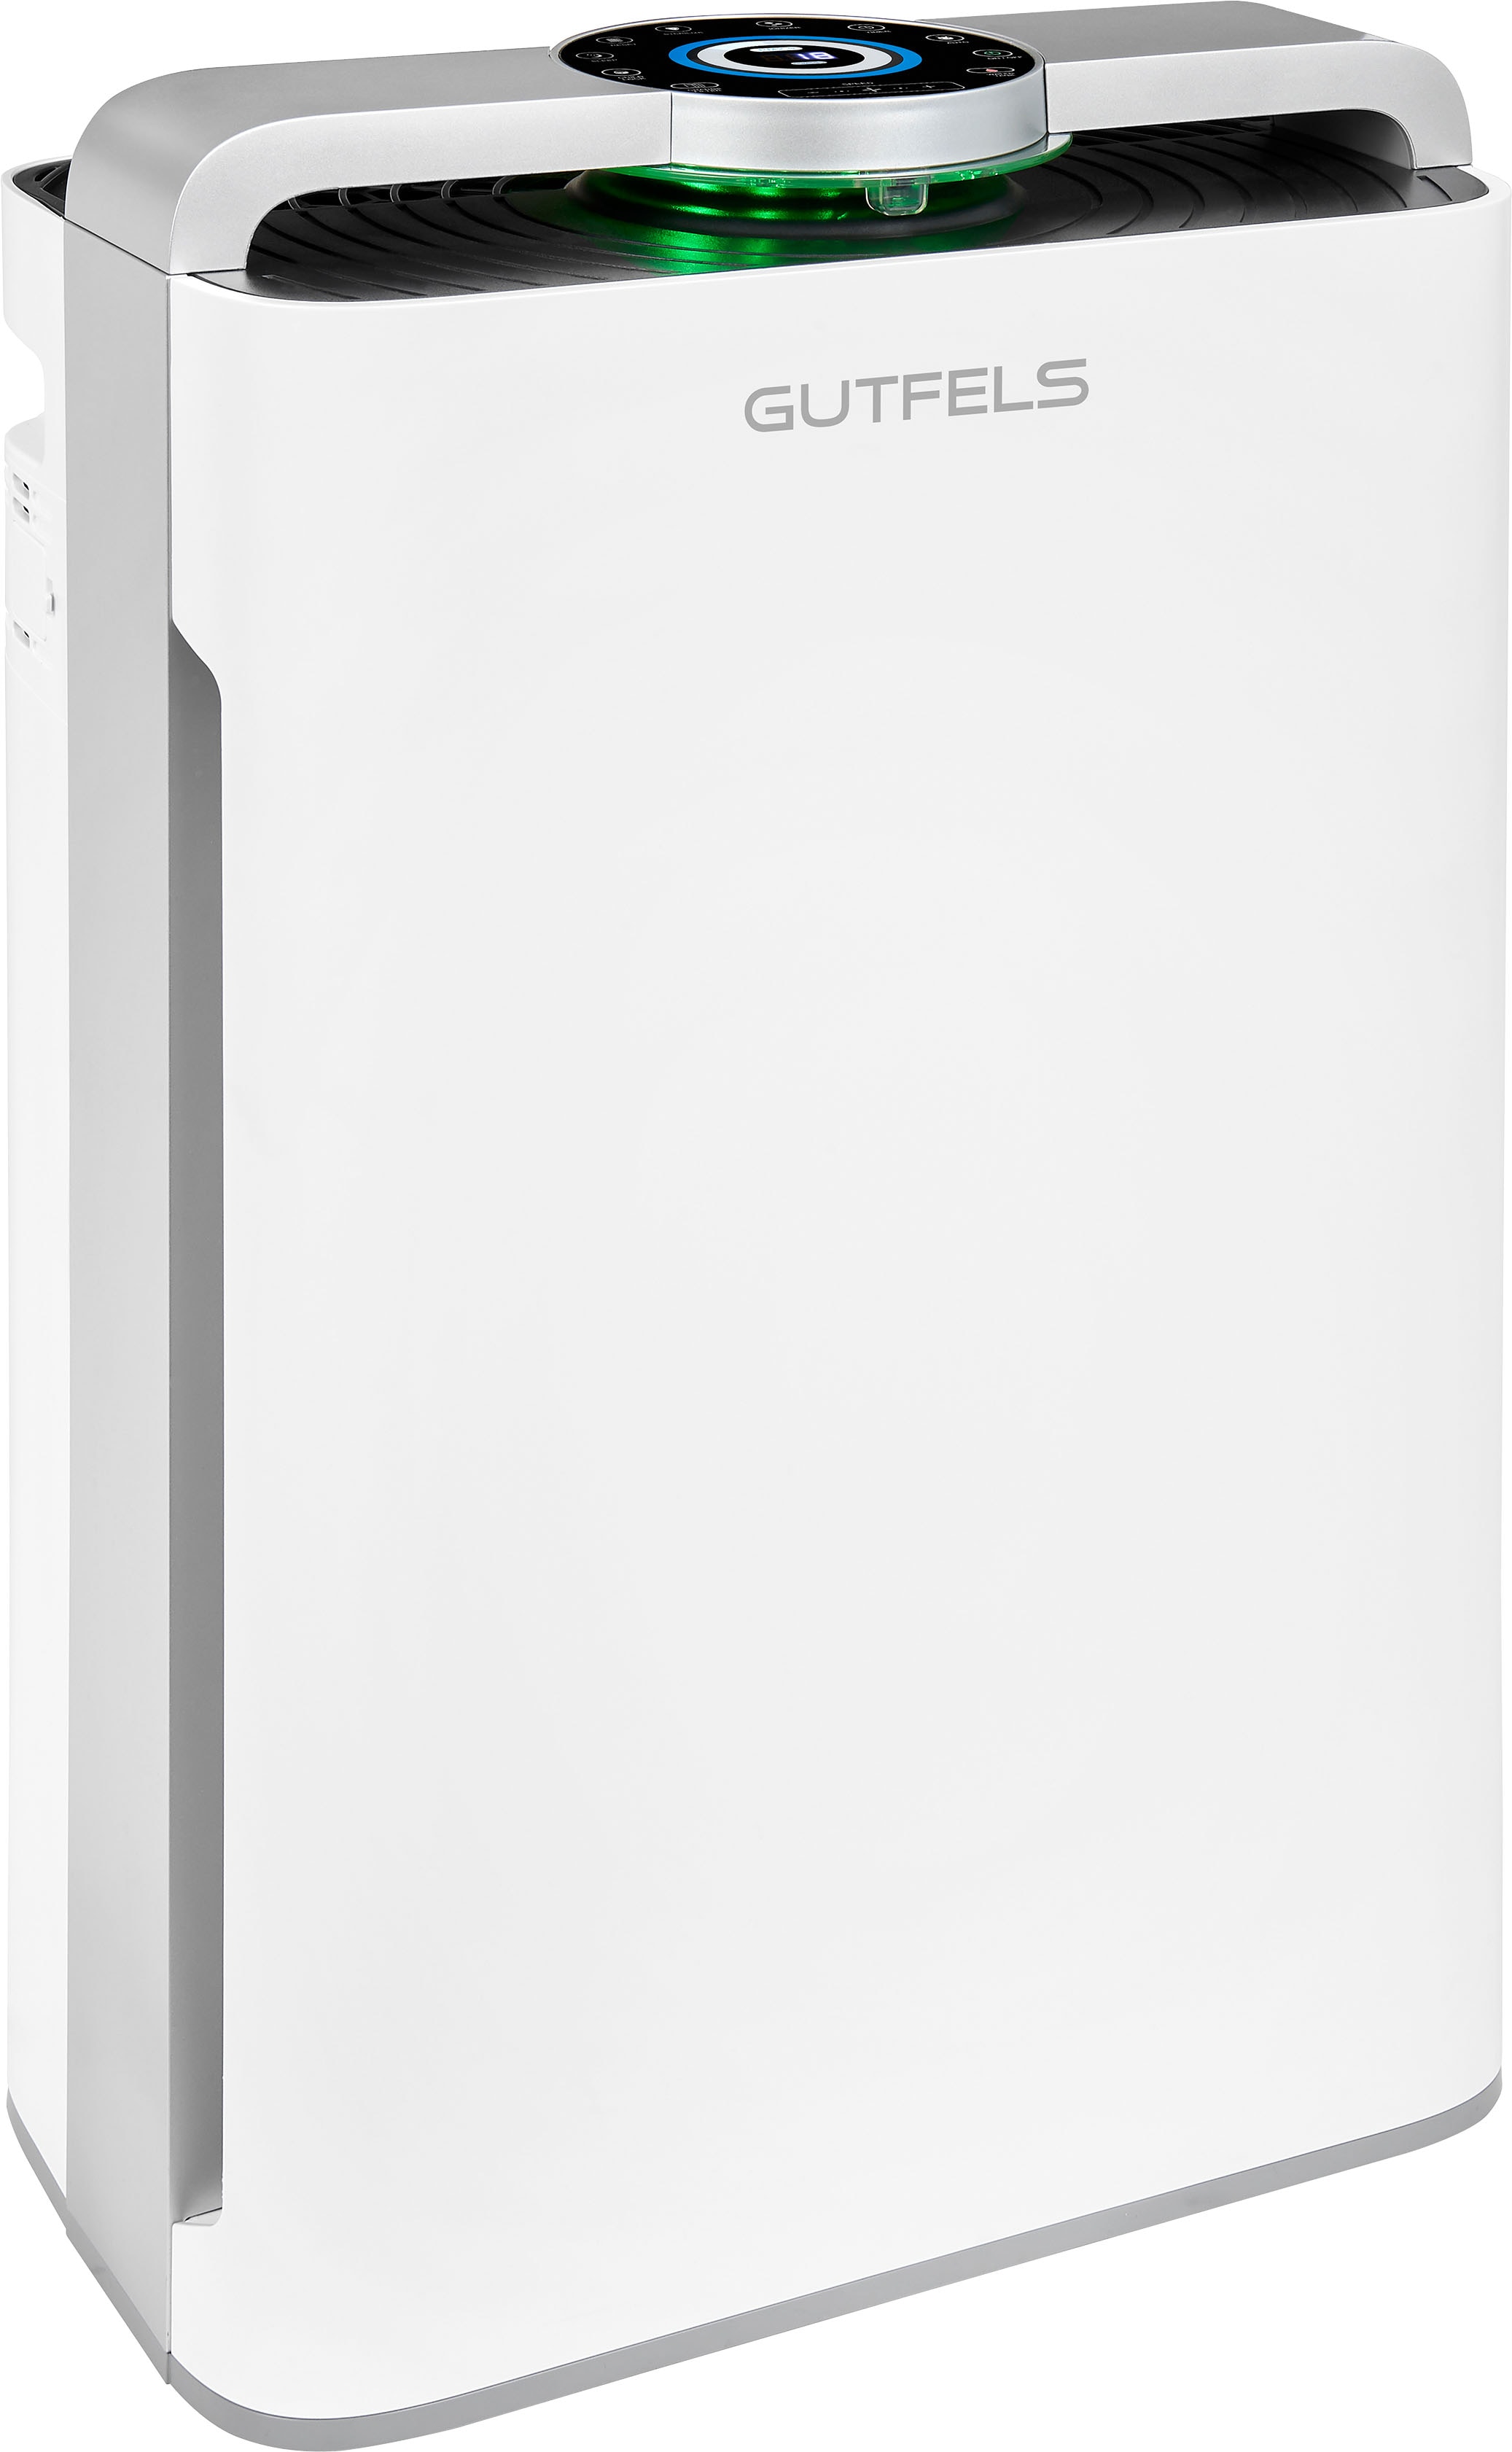 GUTFELS Luftreiniger LR 67015 we | 2-in-1 Kombigerät: Luftreiniger und -befeuchter für 60-70m² | 4-fach Filter | Weiß